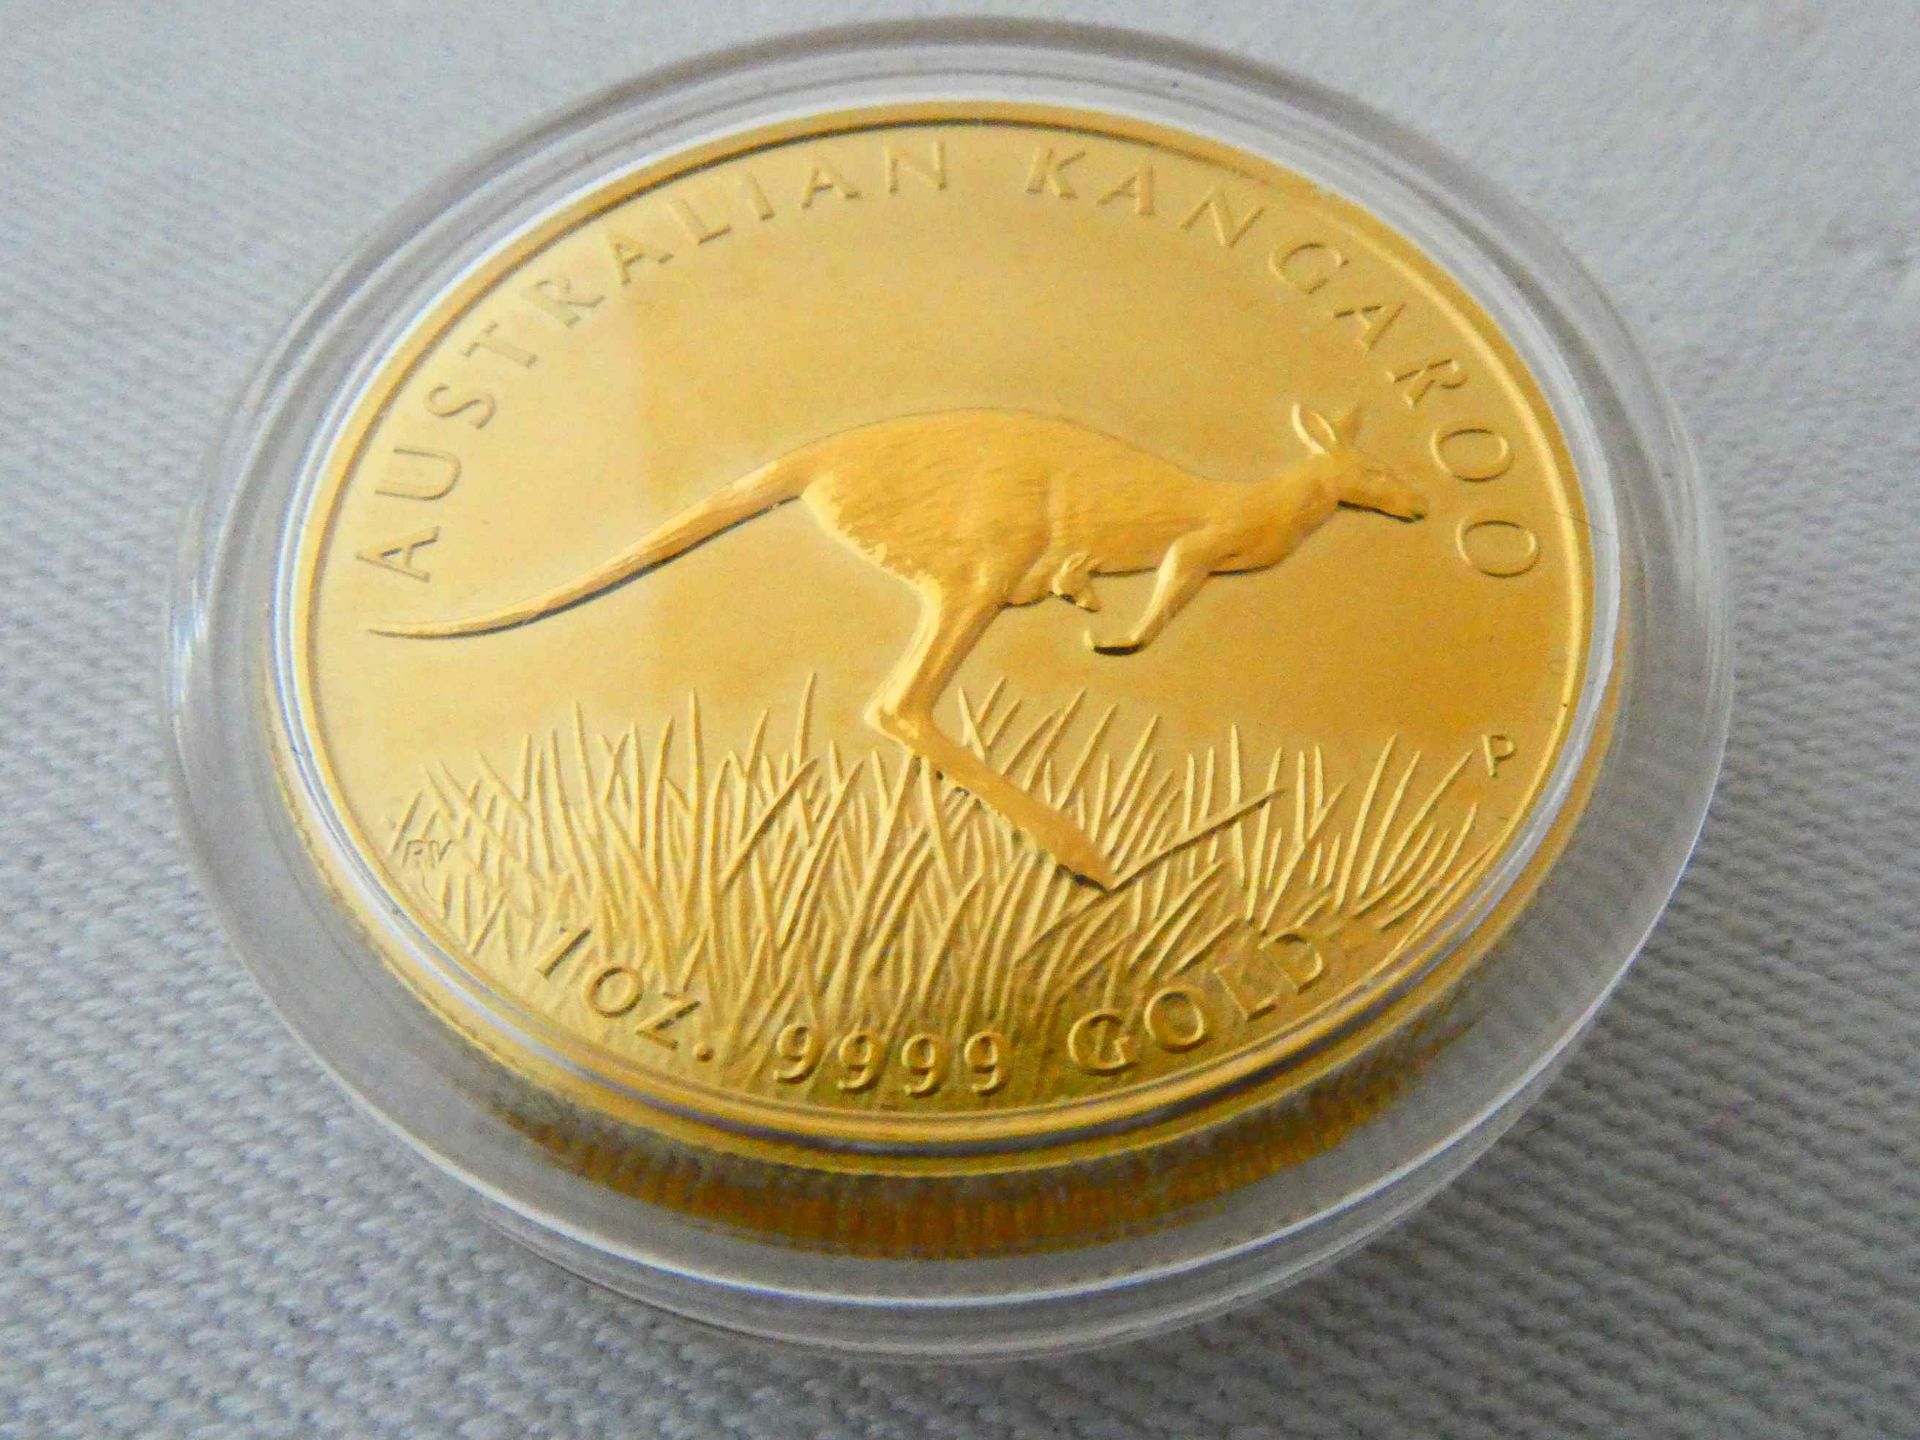 Goldmünze Elisabeth II Australien 2008 in 999 Gold - Bild 2 aus 3